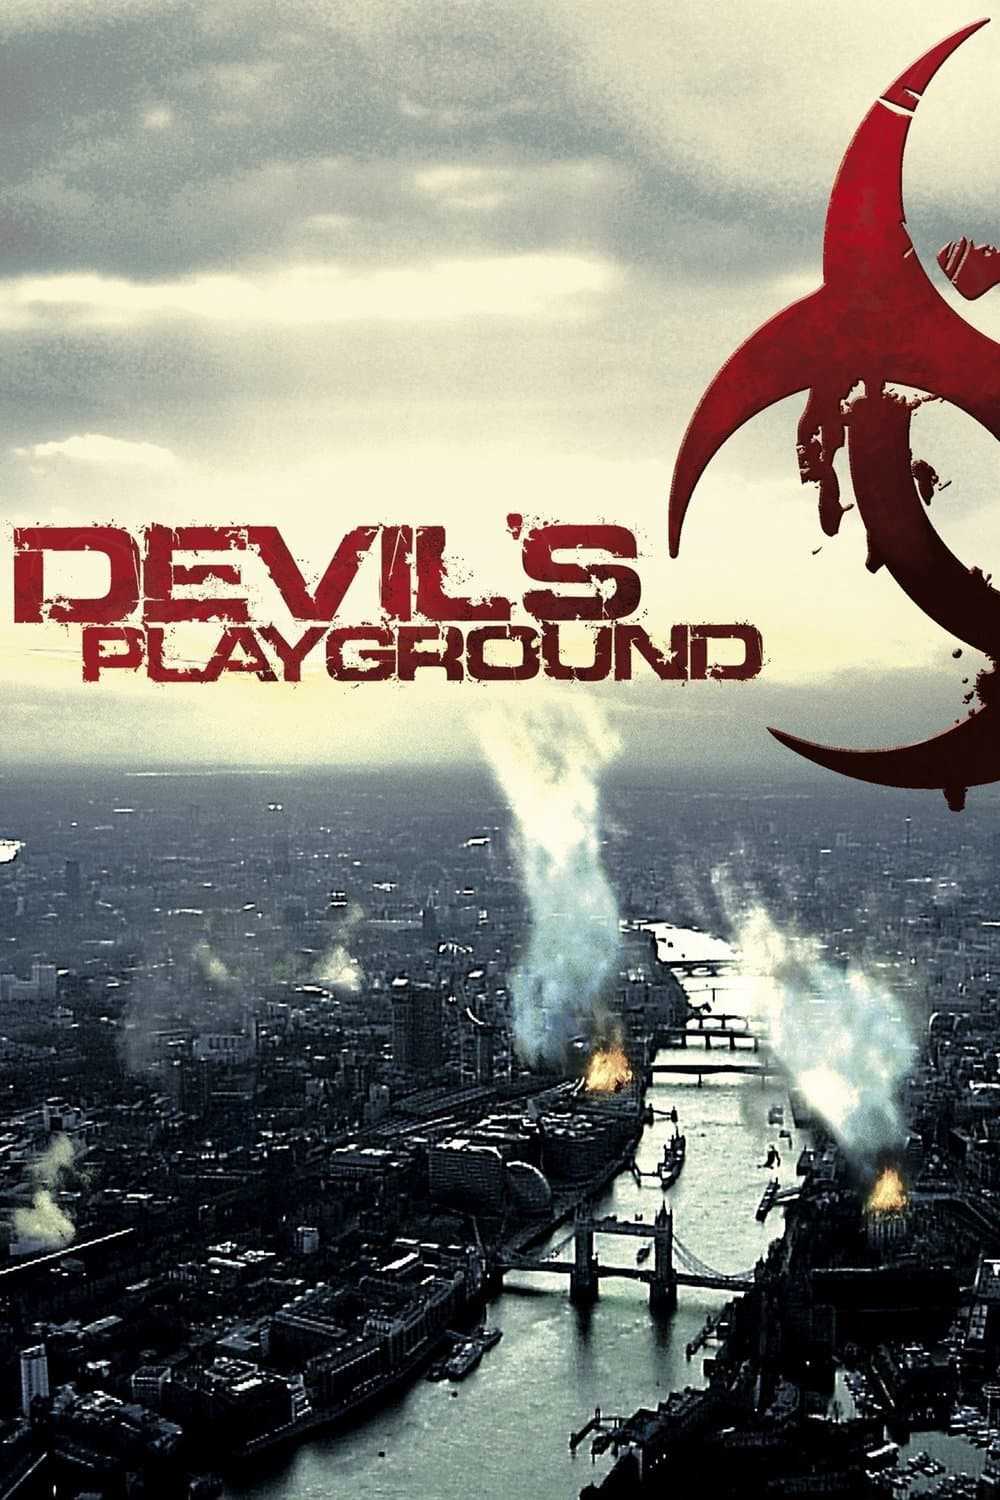 Sân chơi của quỷ - Devil's playground